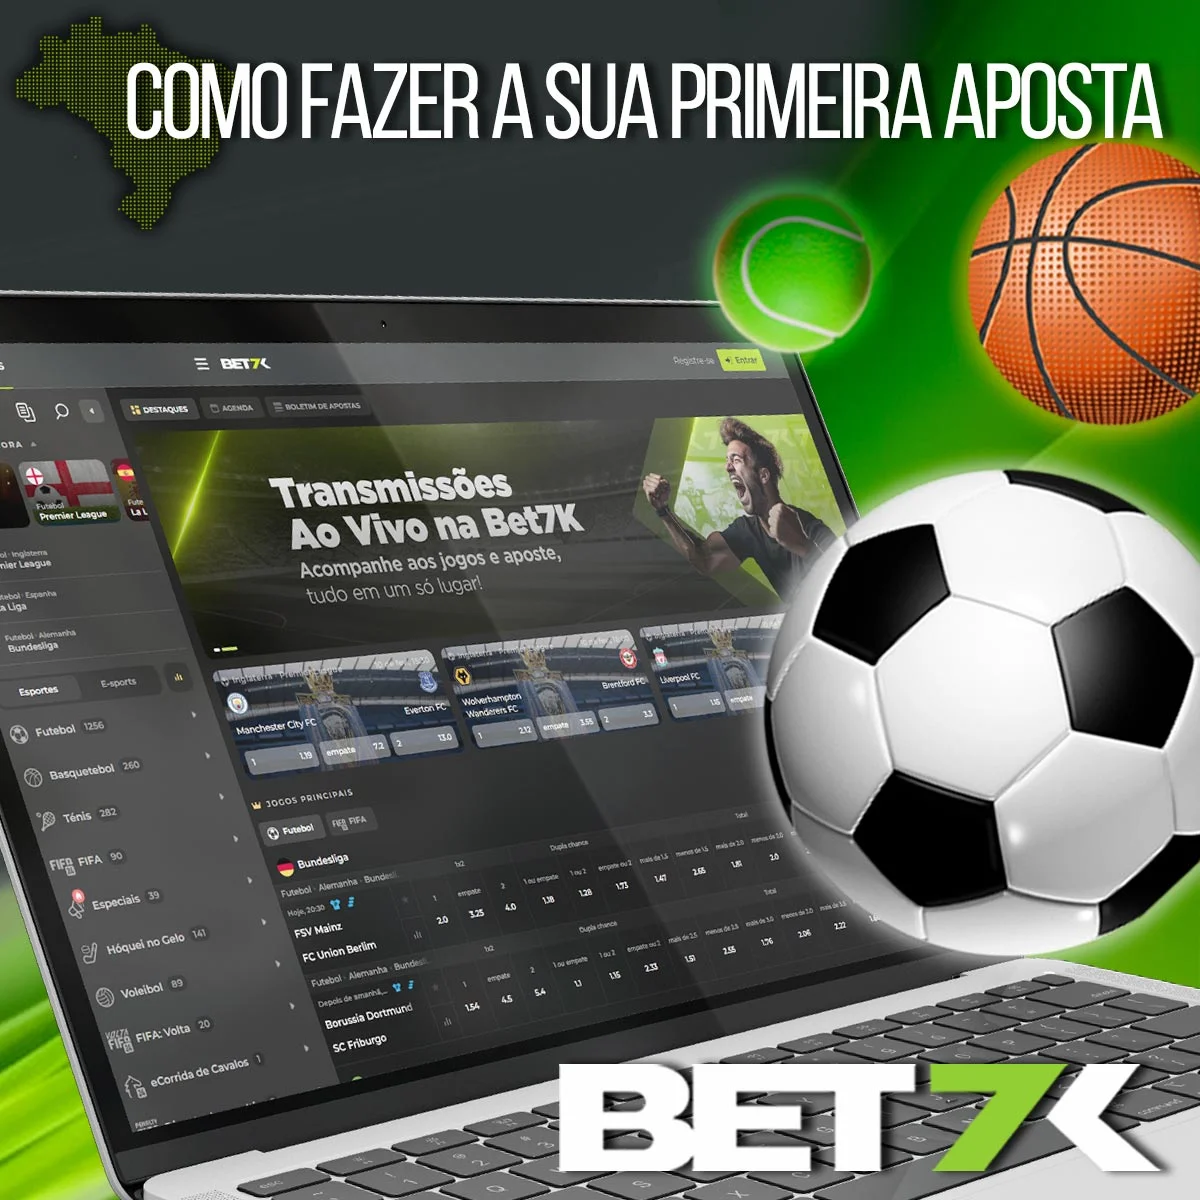 Como fazer sua primeira aposta na casa de apostas Bet7k no Brasil